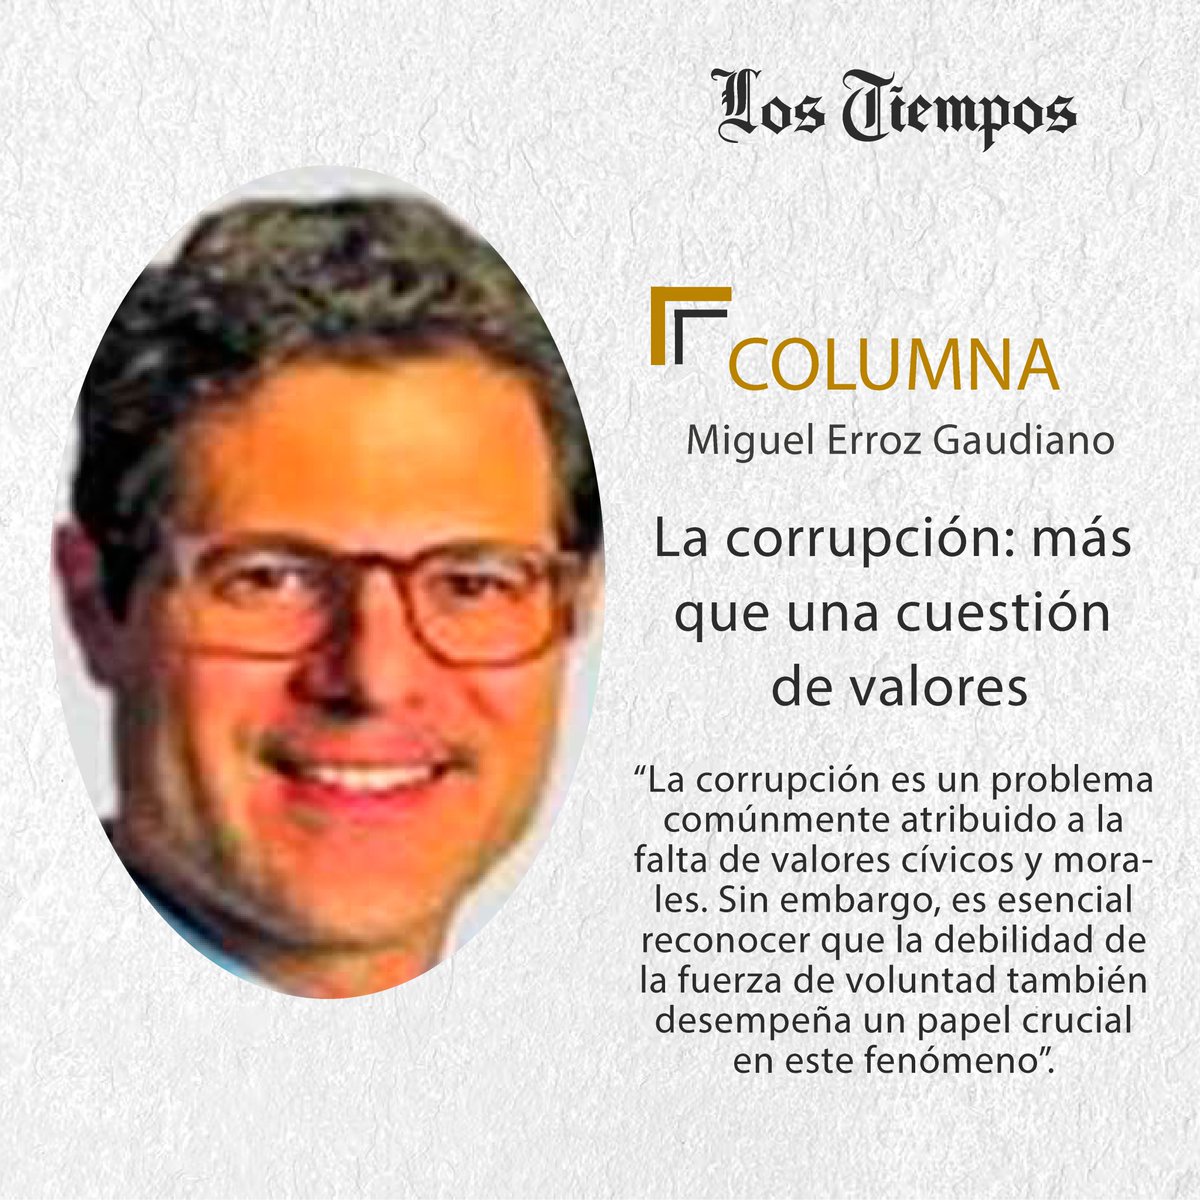 #LTColumna #Puntos de Vista
Lea la columna de Miguel Erroz Gaudiano.
👉 tinyurl.com/478hwjmz